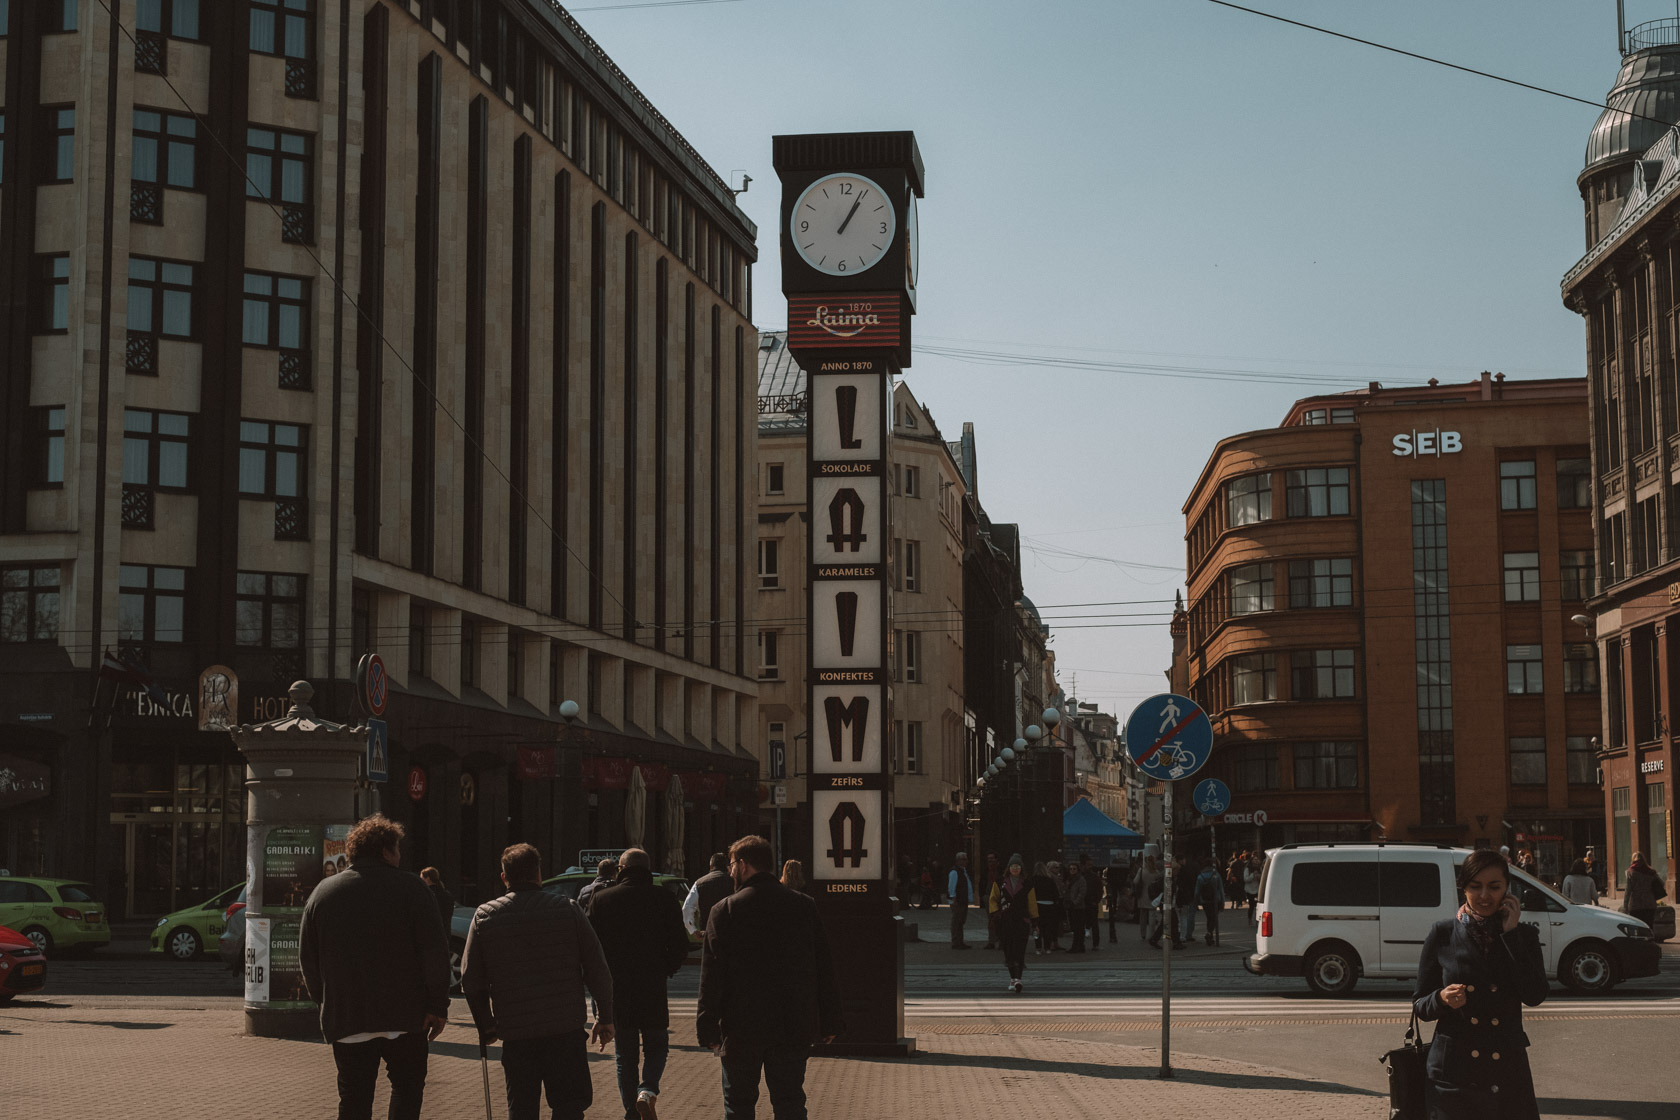 Laima Clock in Riga